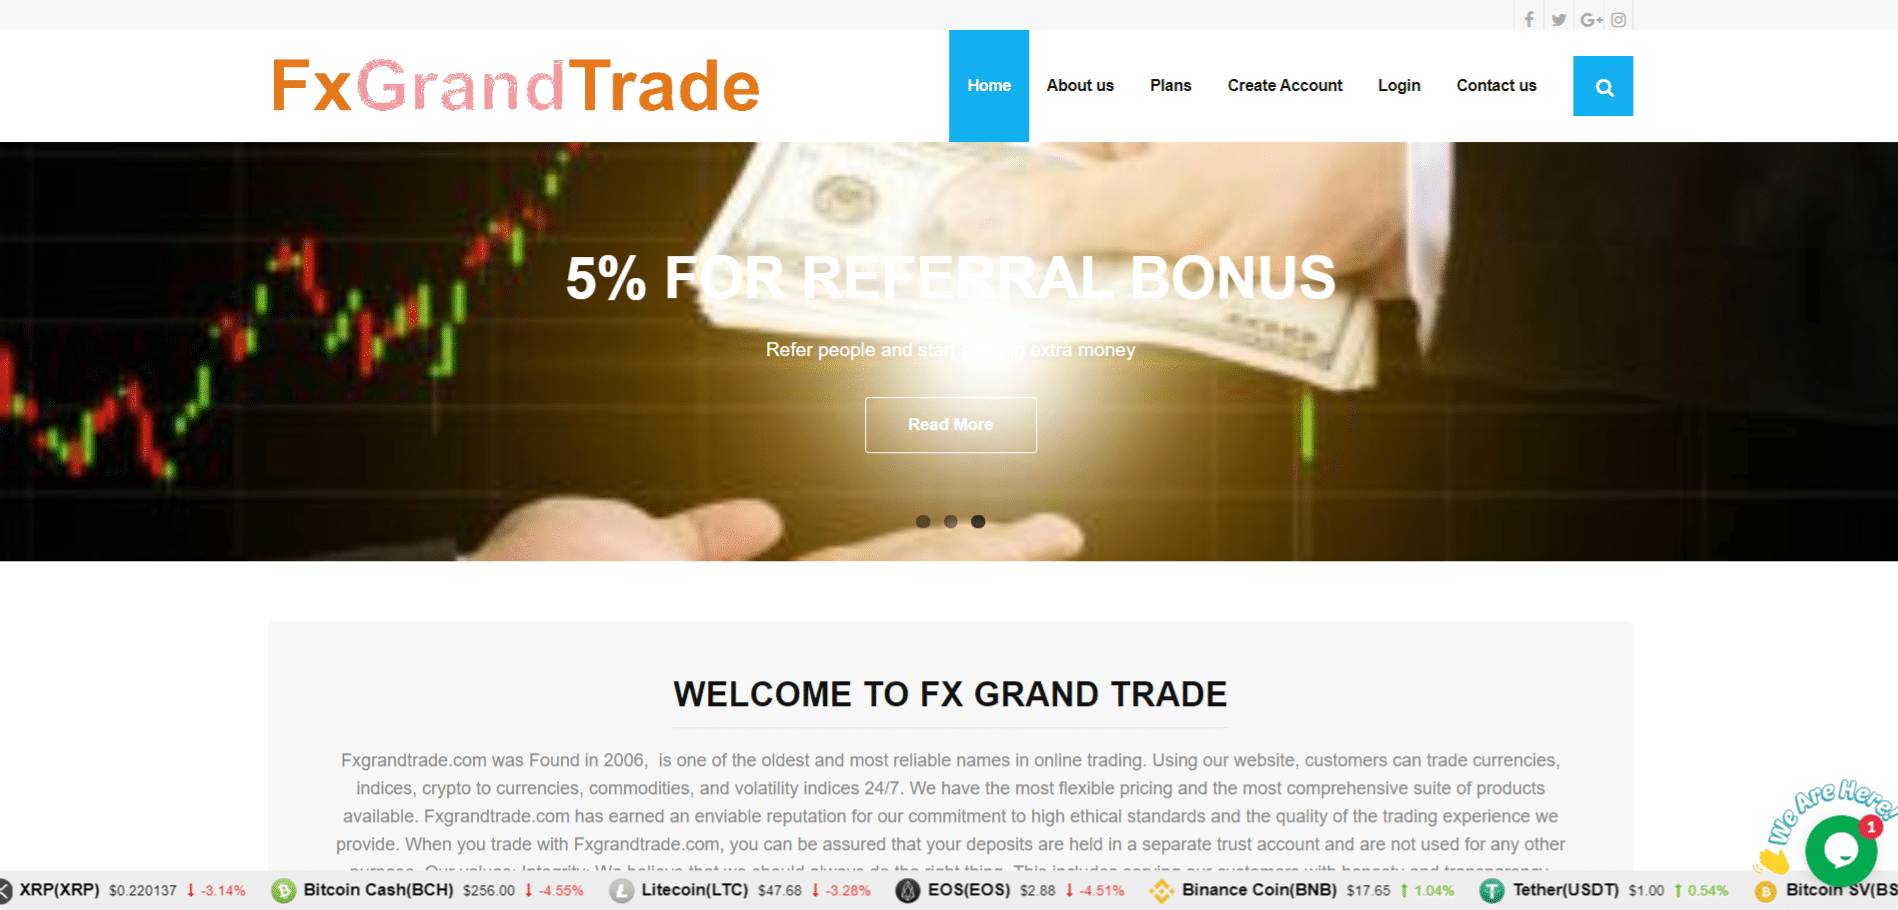 FxGrandTrade scam